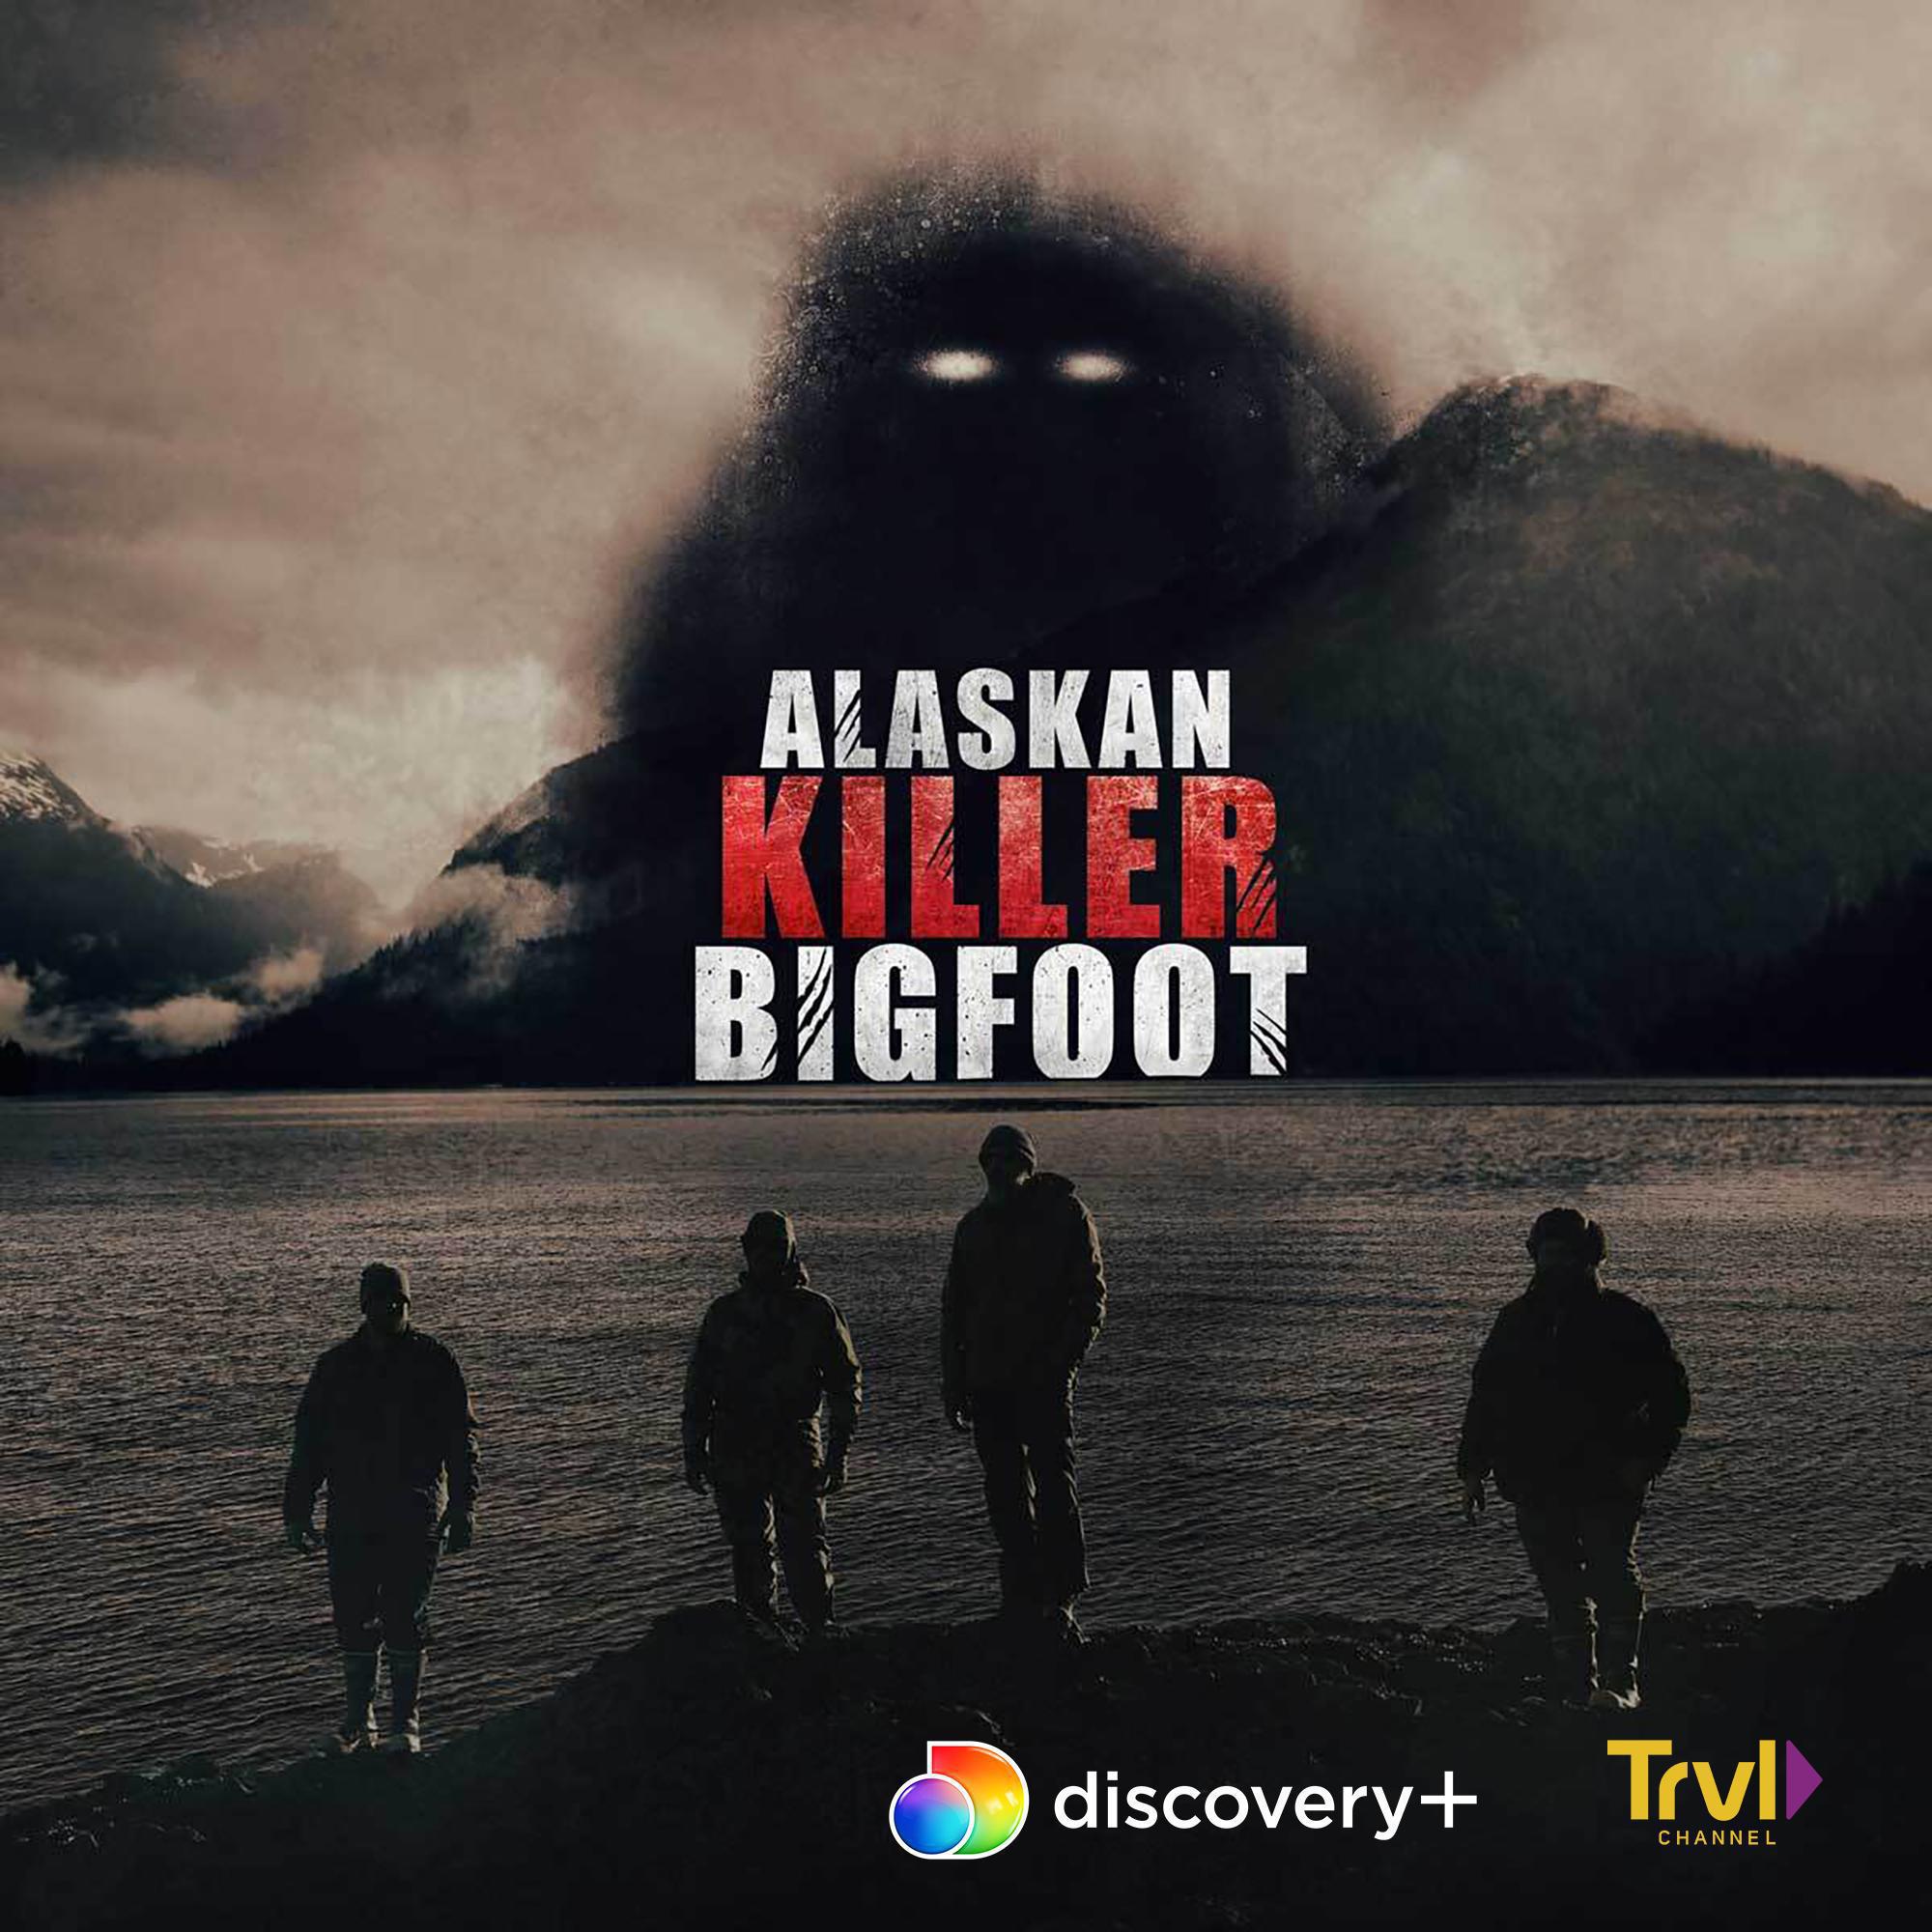 TV ratings for Alaskan Killer Bigfoot in South Korea. Discovery+ TV series